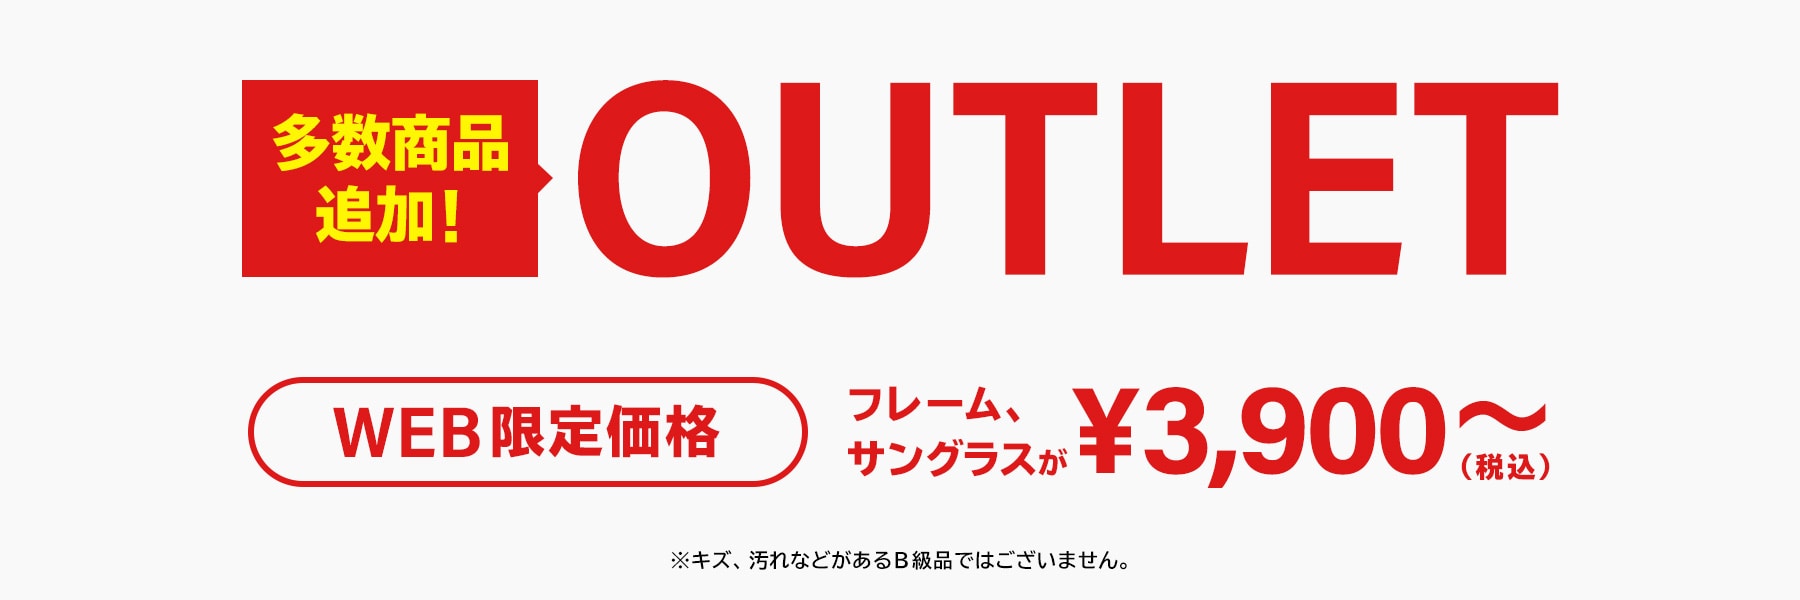 OUTLET WEB限定価格 メガネ サングラス ¥4,290～（税込） ※キズ、汚れなどがあるB級品ではございません。